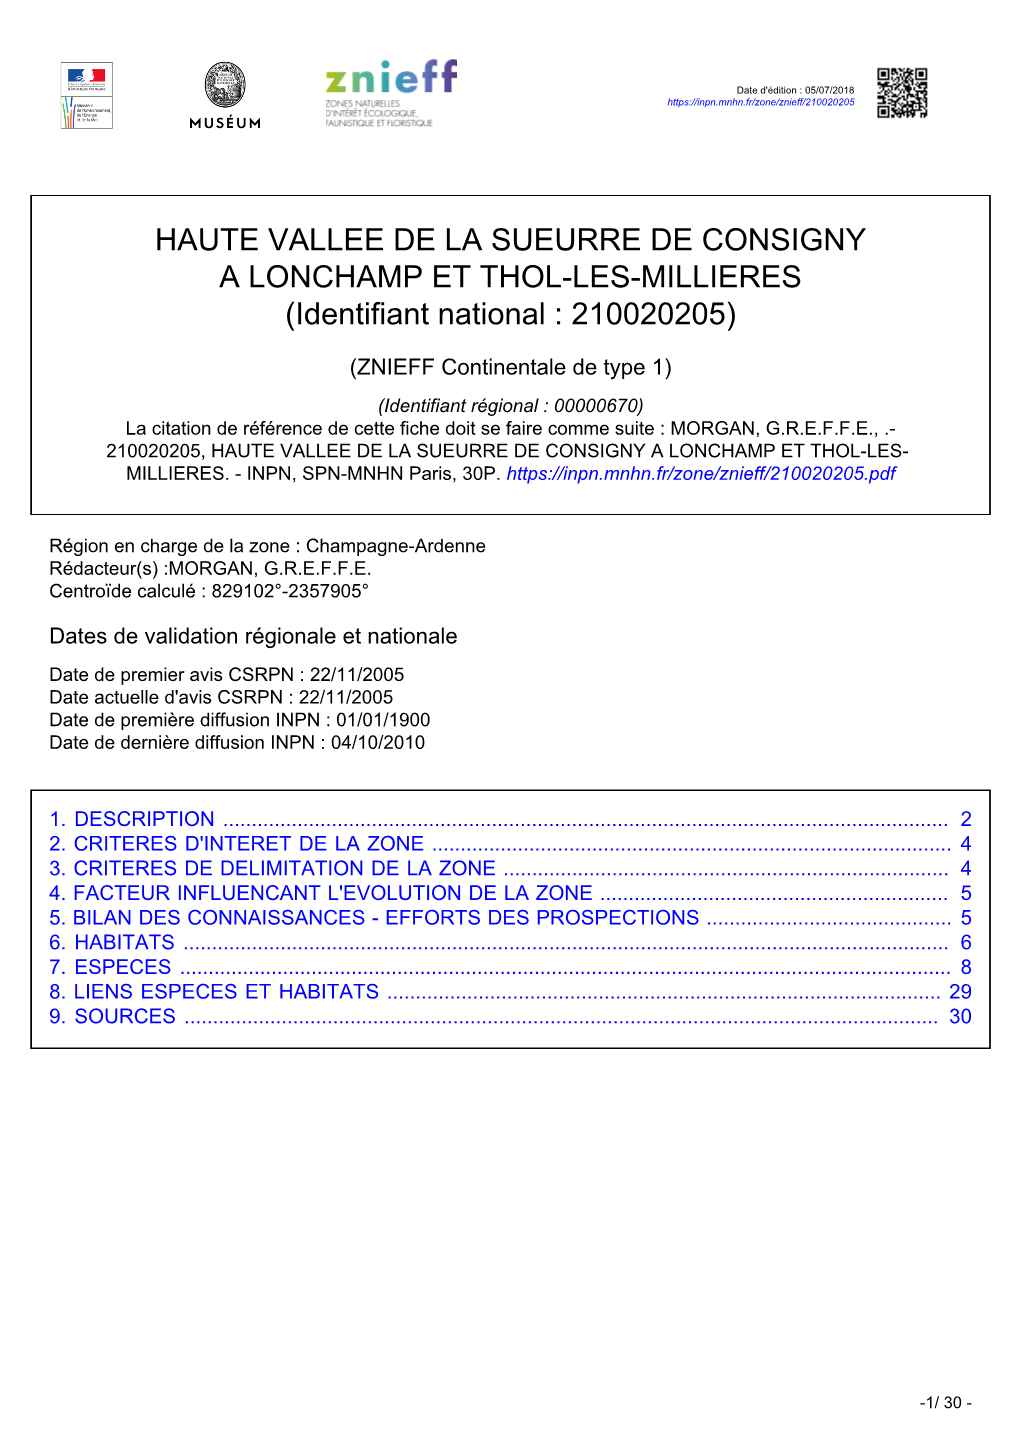 HAUTE VALLEE DE LA SUEURRE DE CONSIGNY a LONCHAMP ET THOL-LES-MILLIERES (Identifiant National : 210020205)